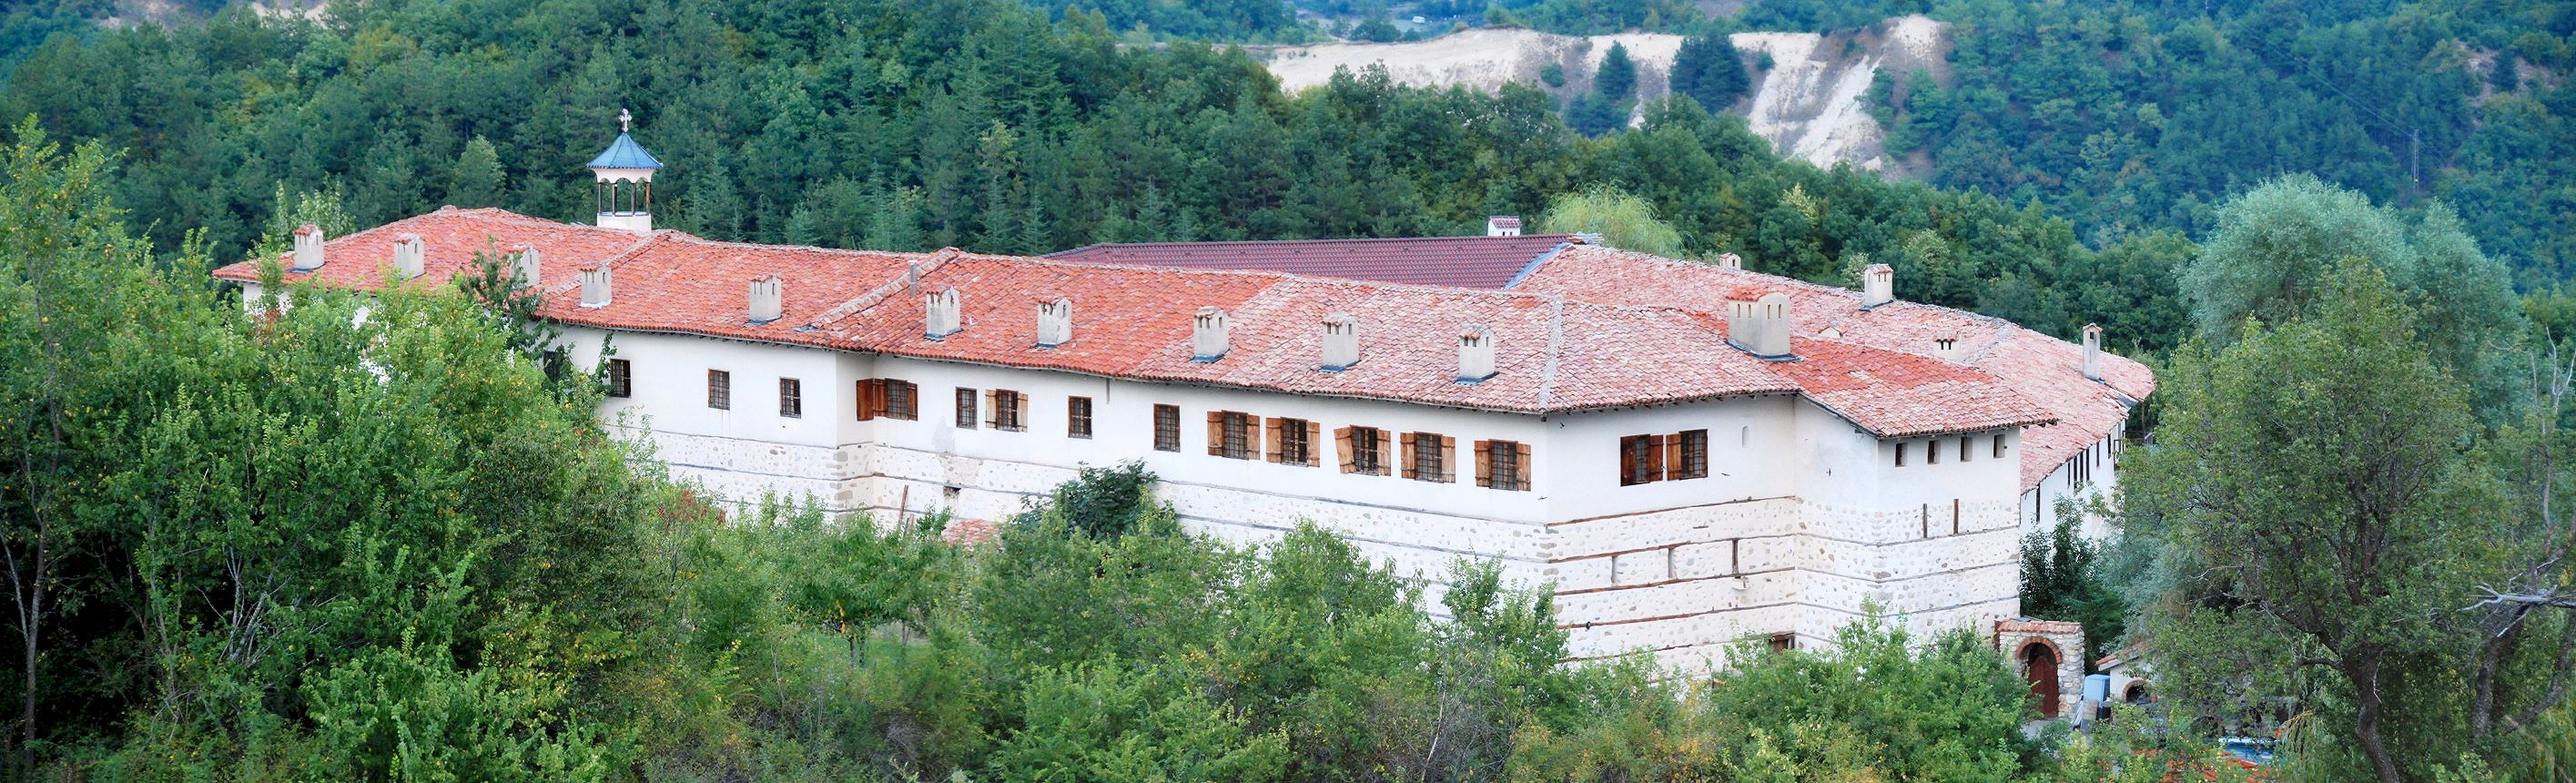 Rozhen-Kloster